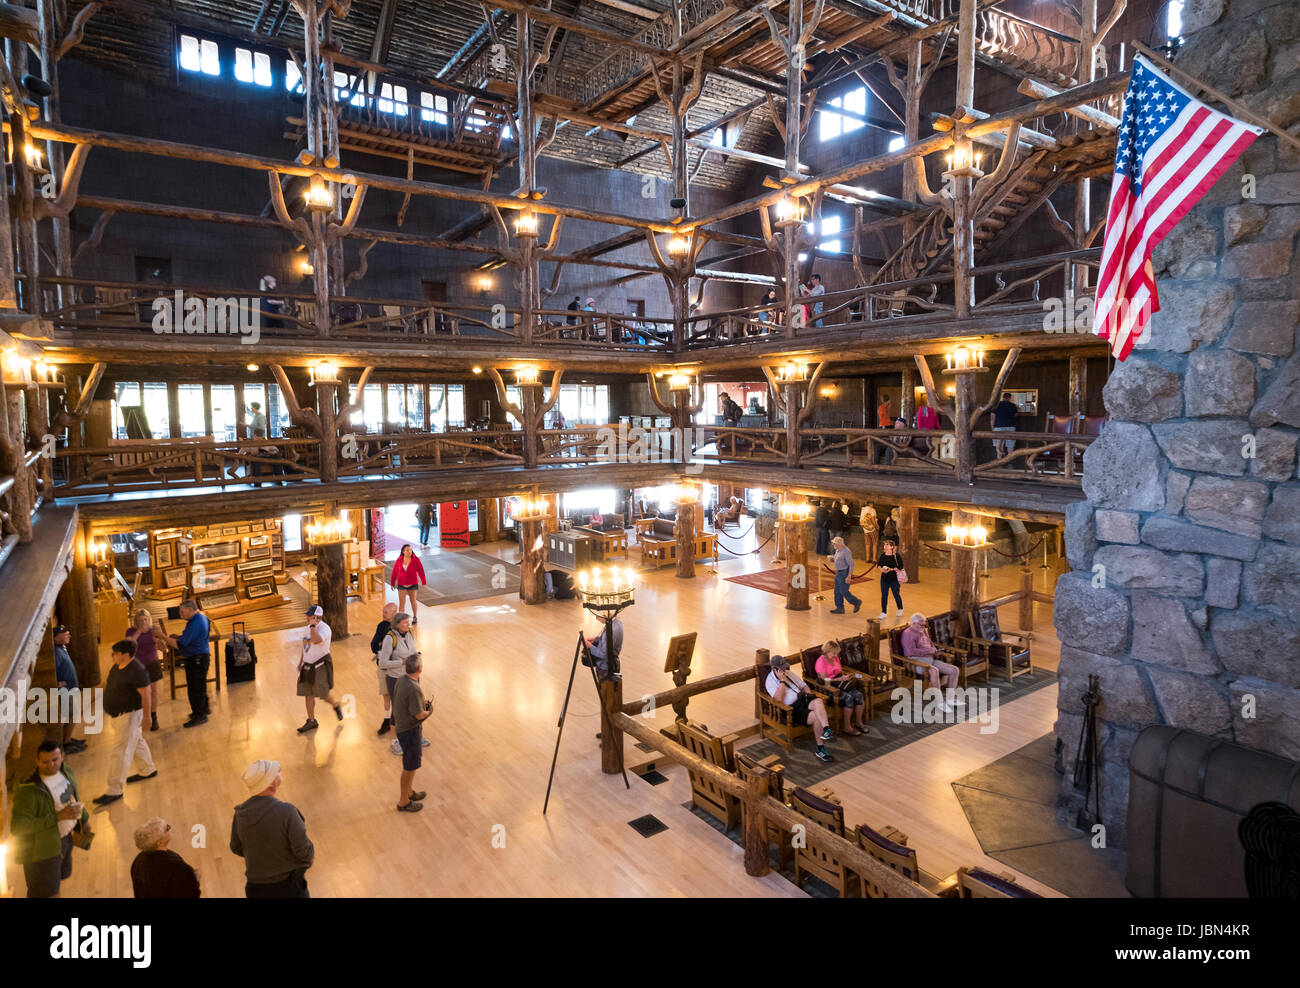 Photographie de l'intérieur de l'accueil/hall de l'Old Faithful Inn, Yellowstone National Park, Wyoming, USA Banque D'Images